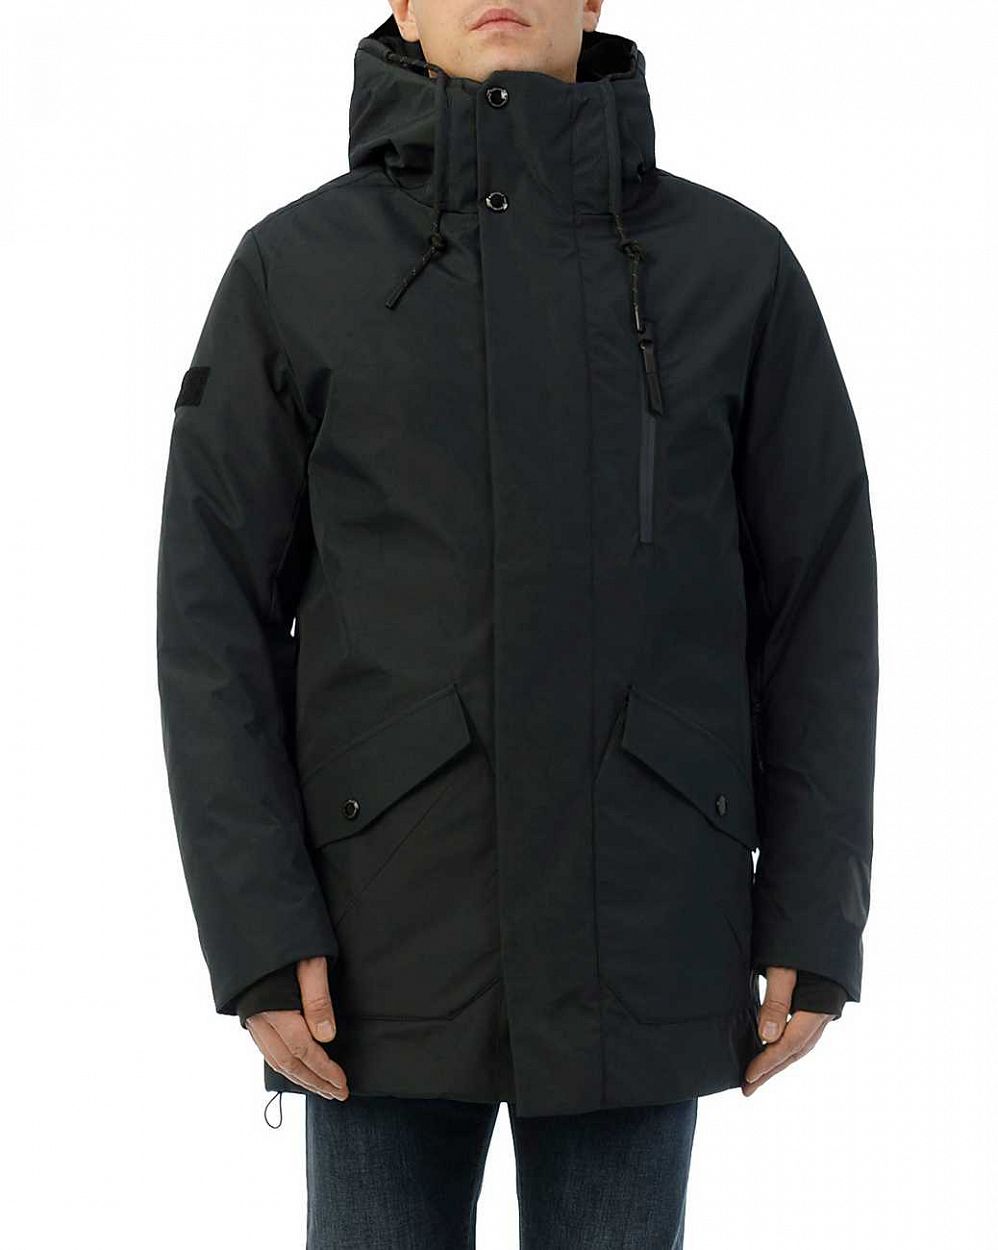 Куртка мужская зимняя водонепроницаемая на мембране Loading Reloaded 2 Graphit отзывы